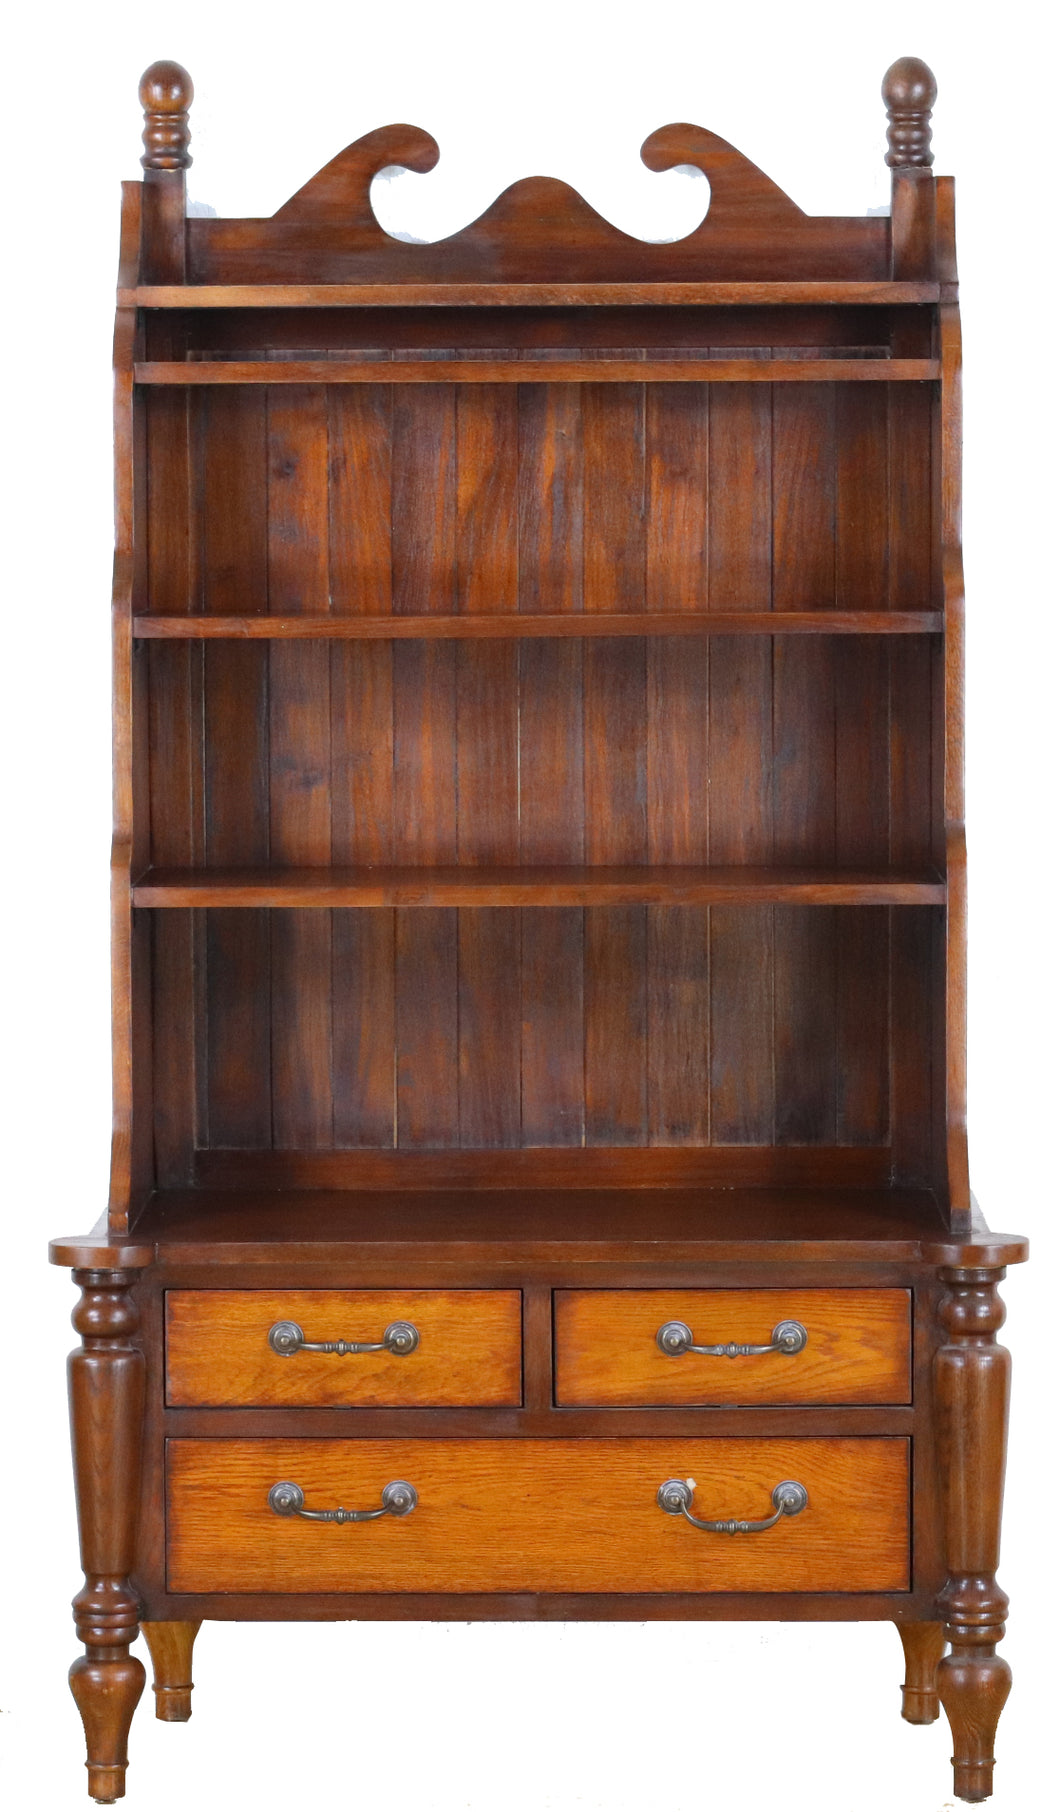 TNC Antique Reproduction Bookcase, Solid Oak